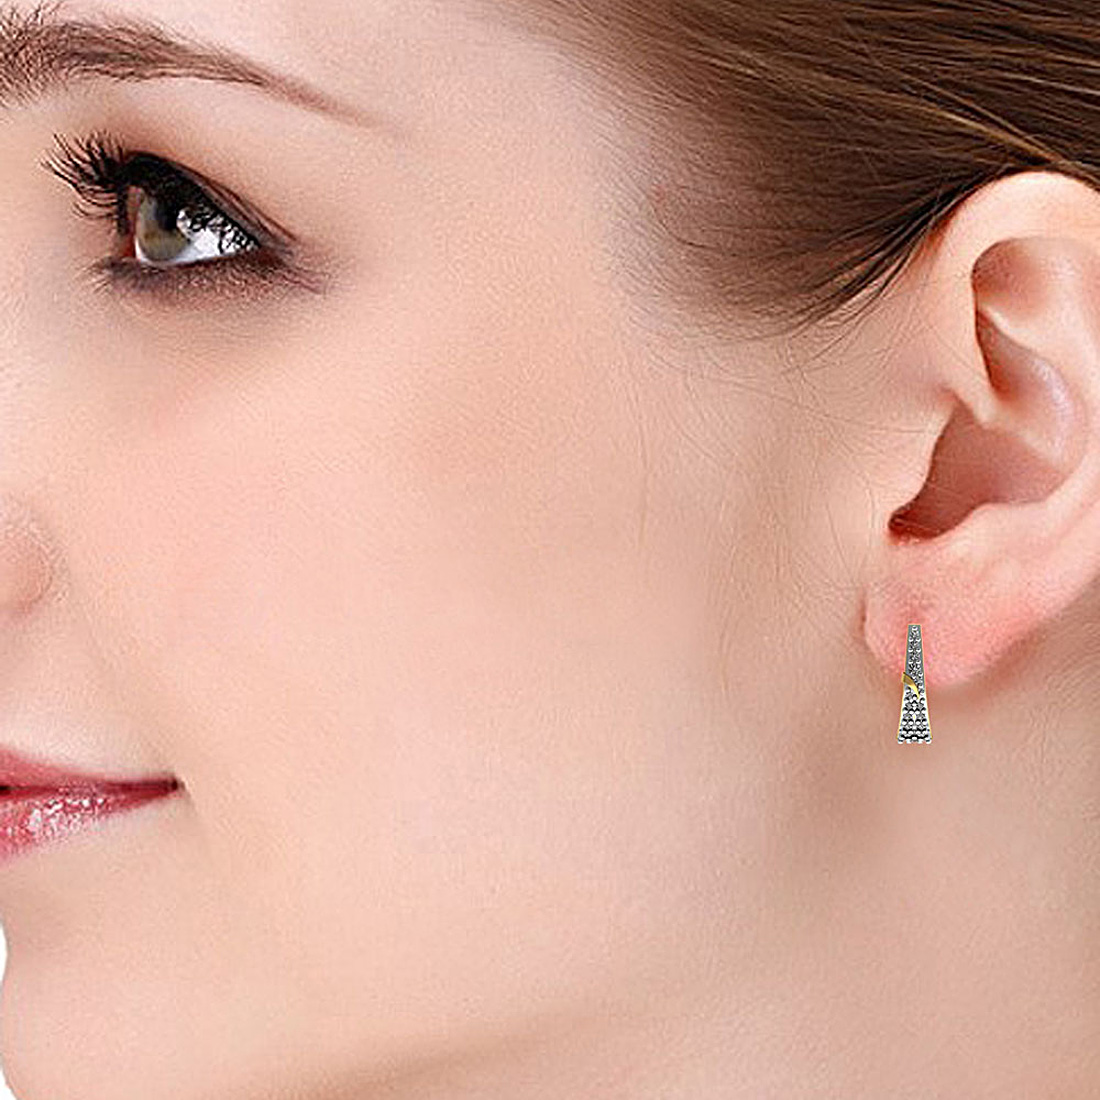 Gorgeous Diamond & Gold Earring